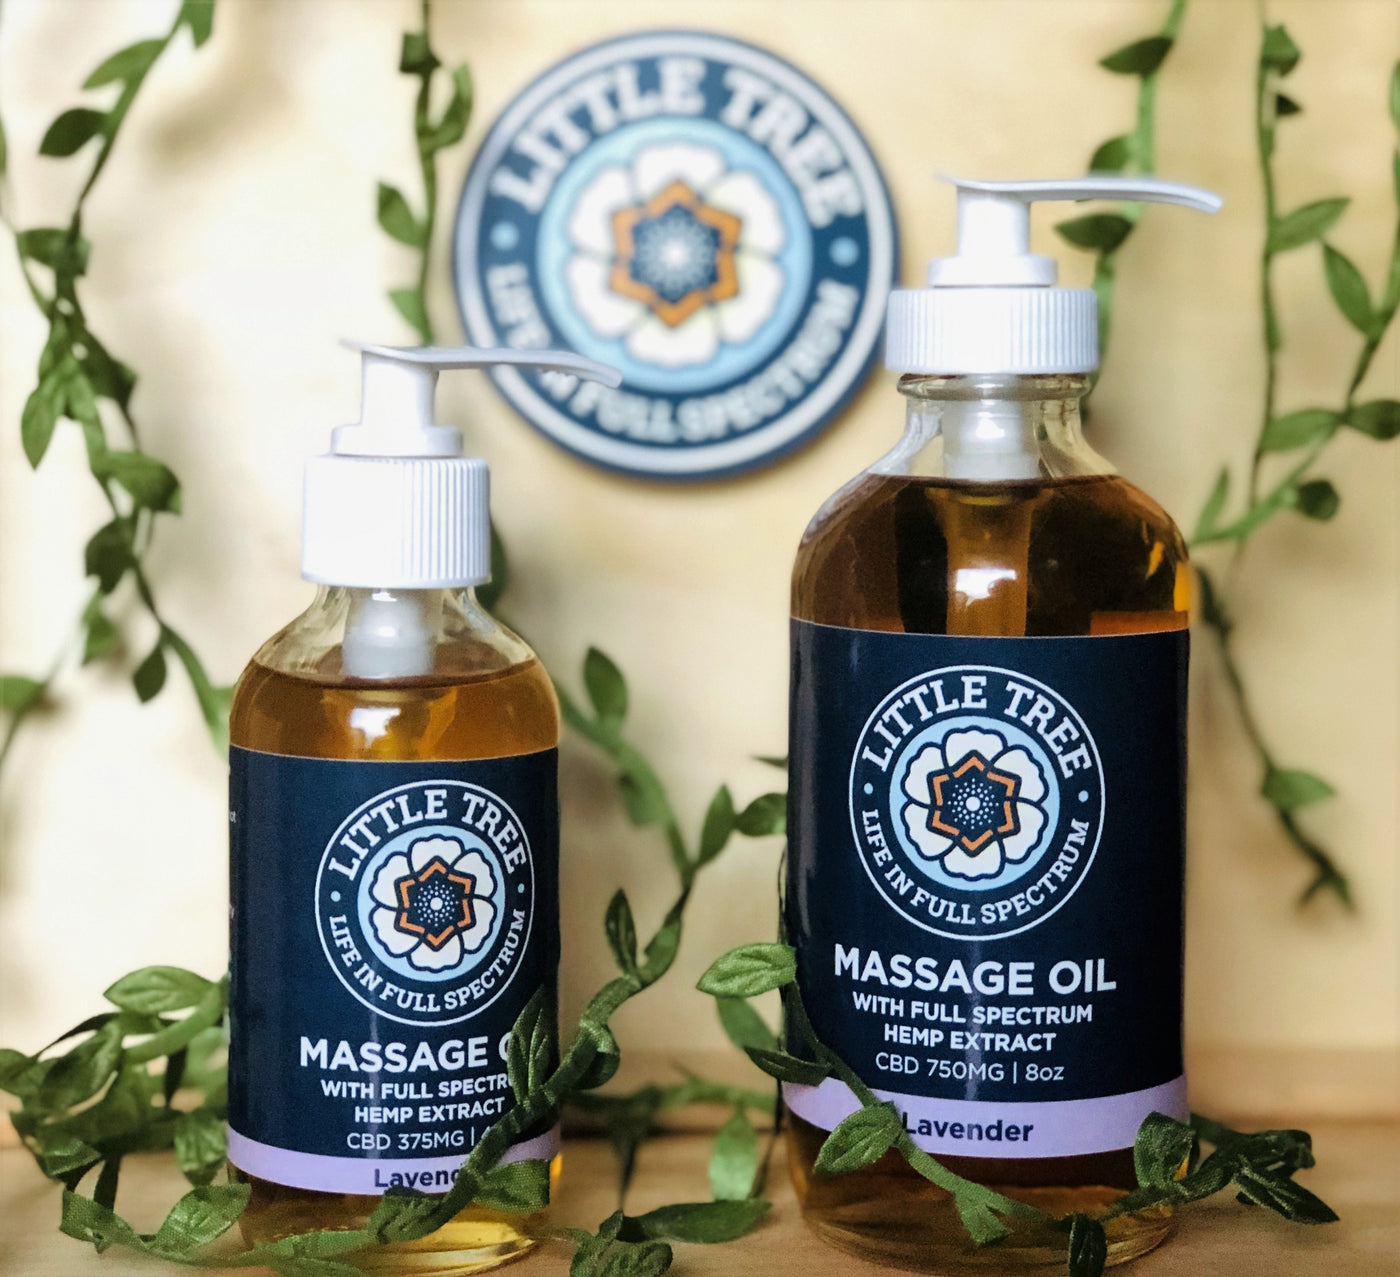 Massage Oil - Little Tree Labs